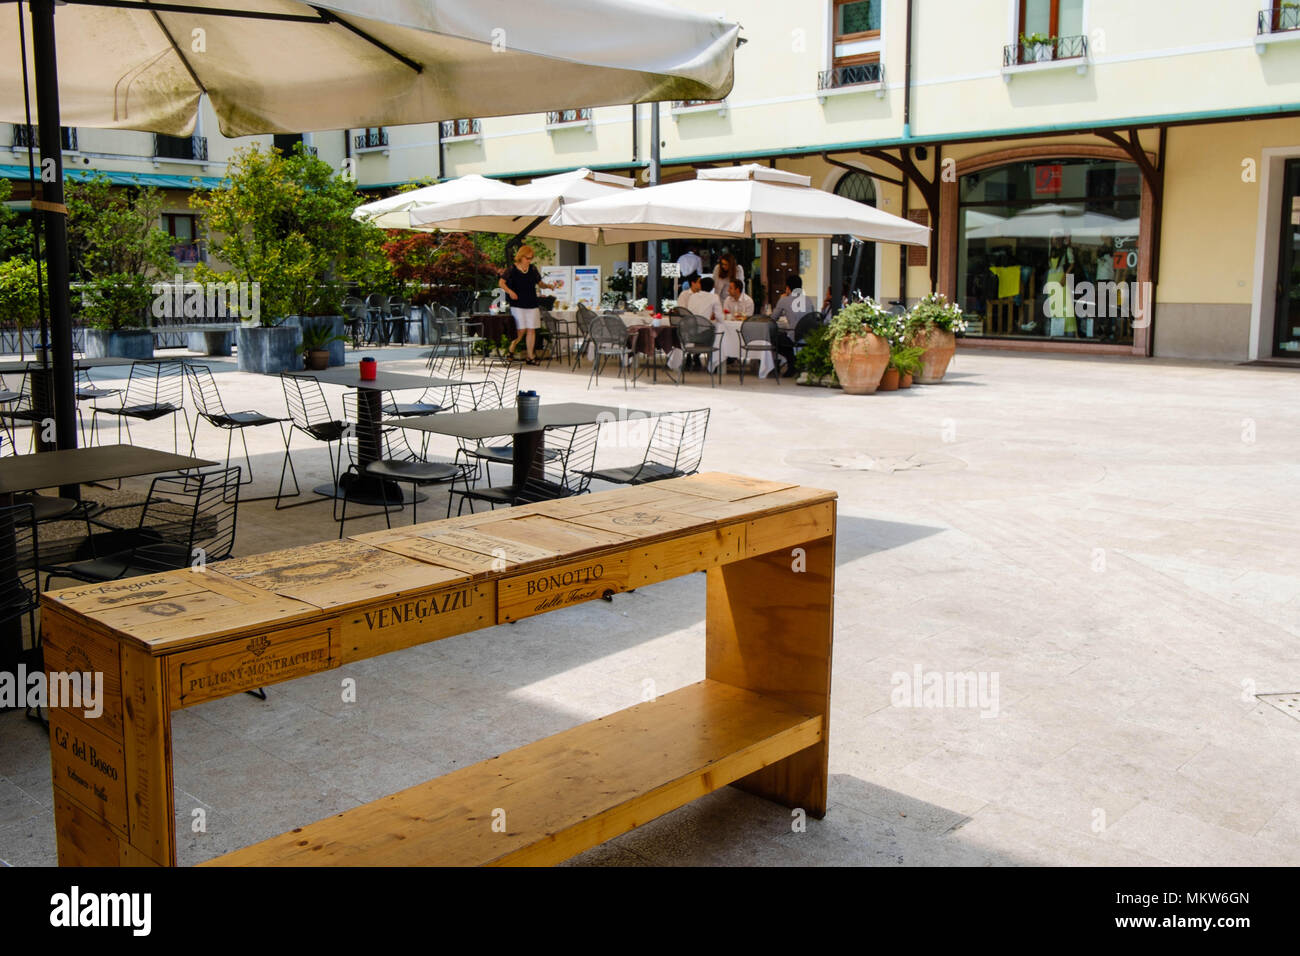 Die renovierten Quartiere Latino in Treviso ist jetzt eine ruhige, aber lebendiger Stadtteil mit zahlreichen Restaurants. Autos sind hier nicht erlaubt. Stockfoto